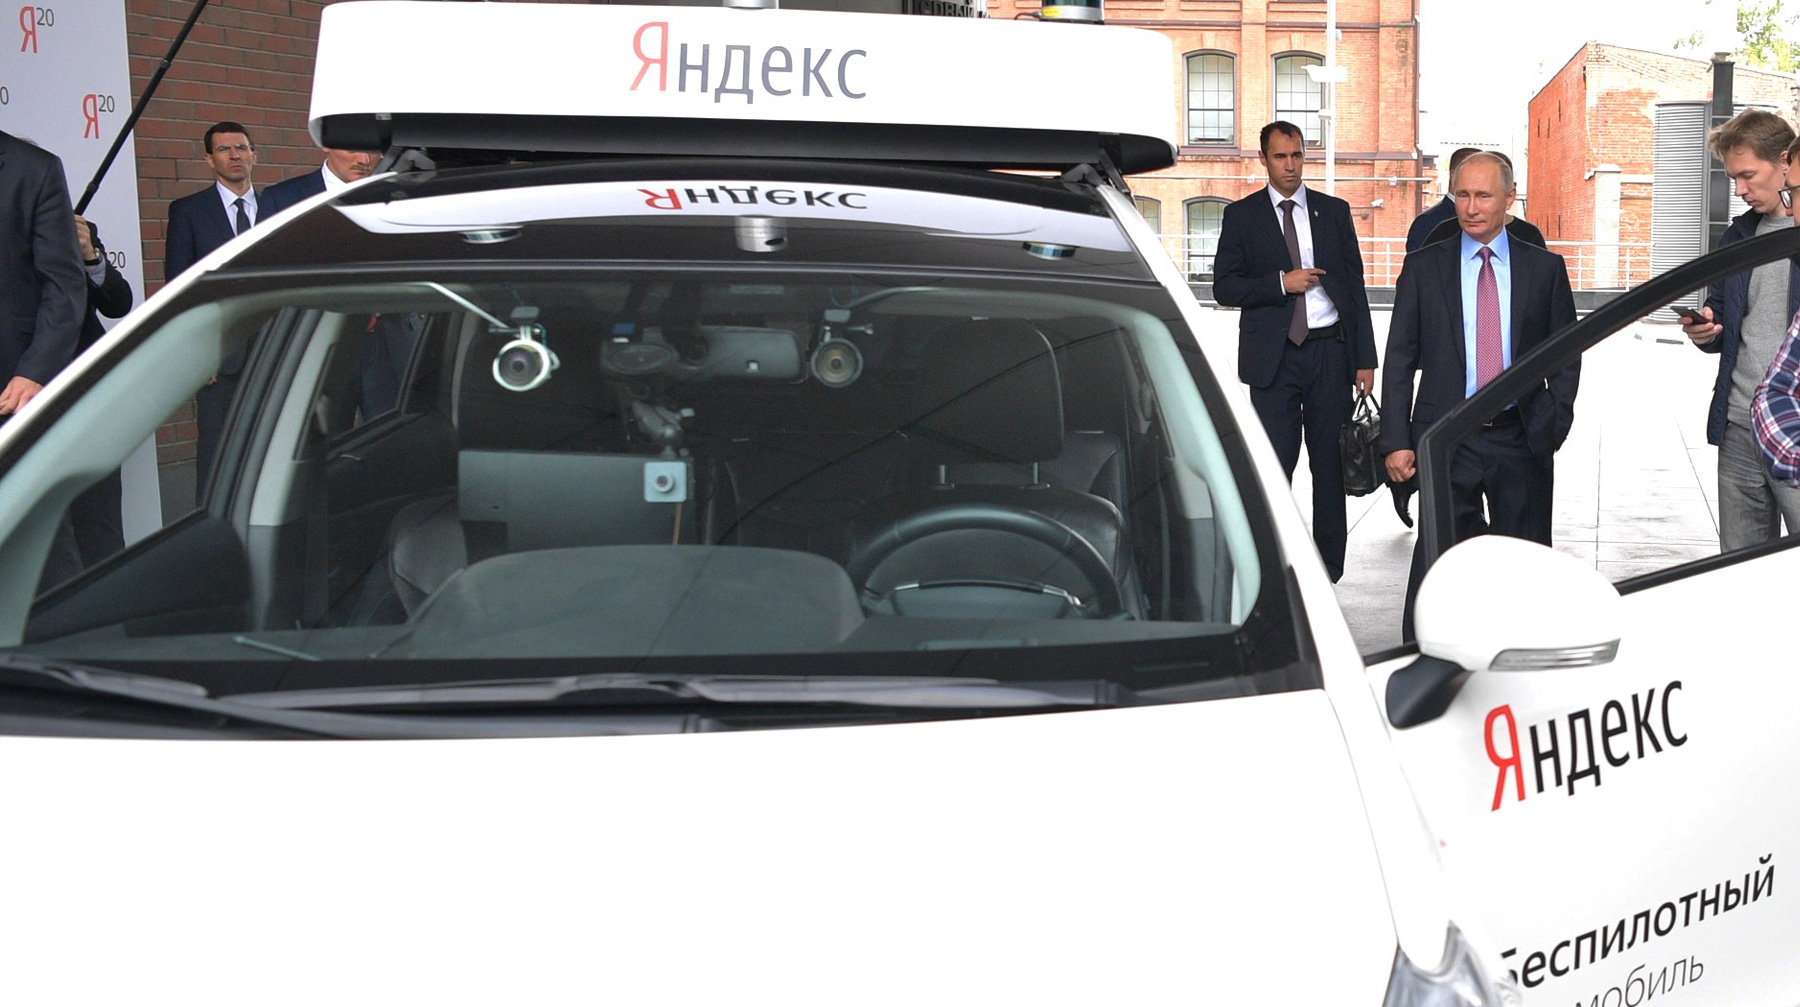 В этом году на дороги российских городов выйдут около 150 высокоавтоматизированных машин Фото: © kremlin.ru